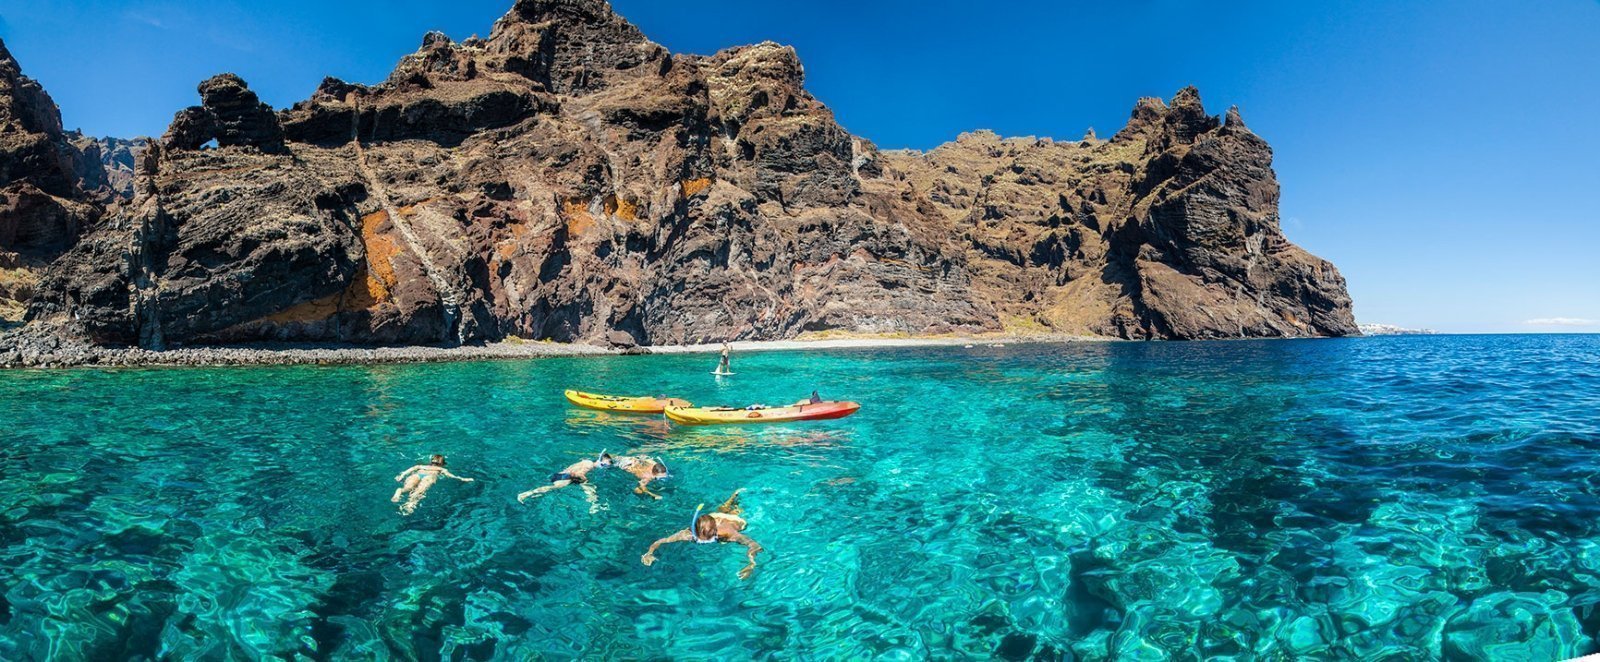 Kayaking in Tenerife - Masca Bay